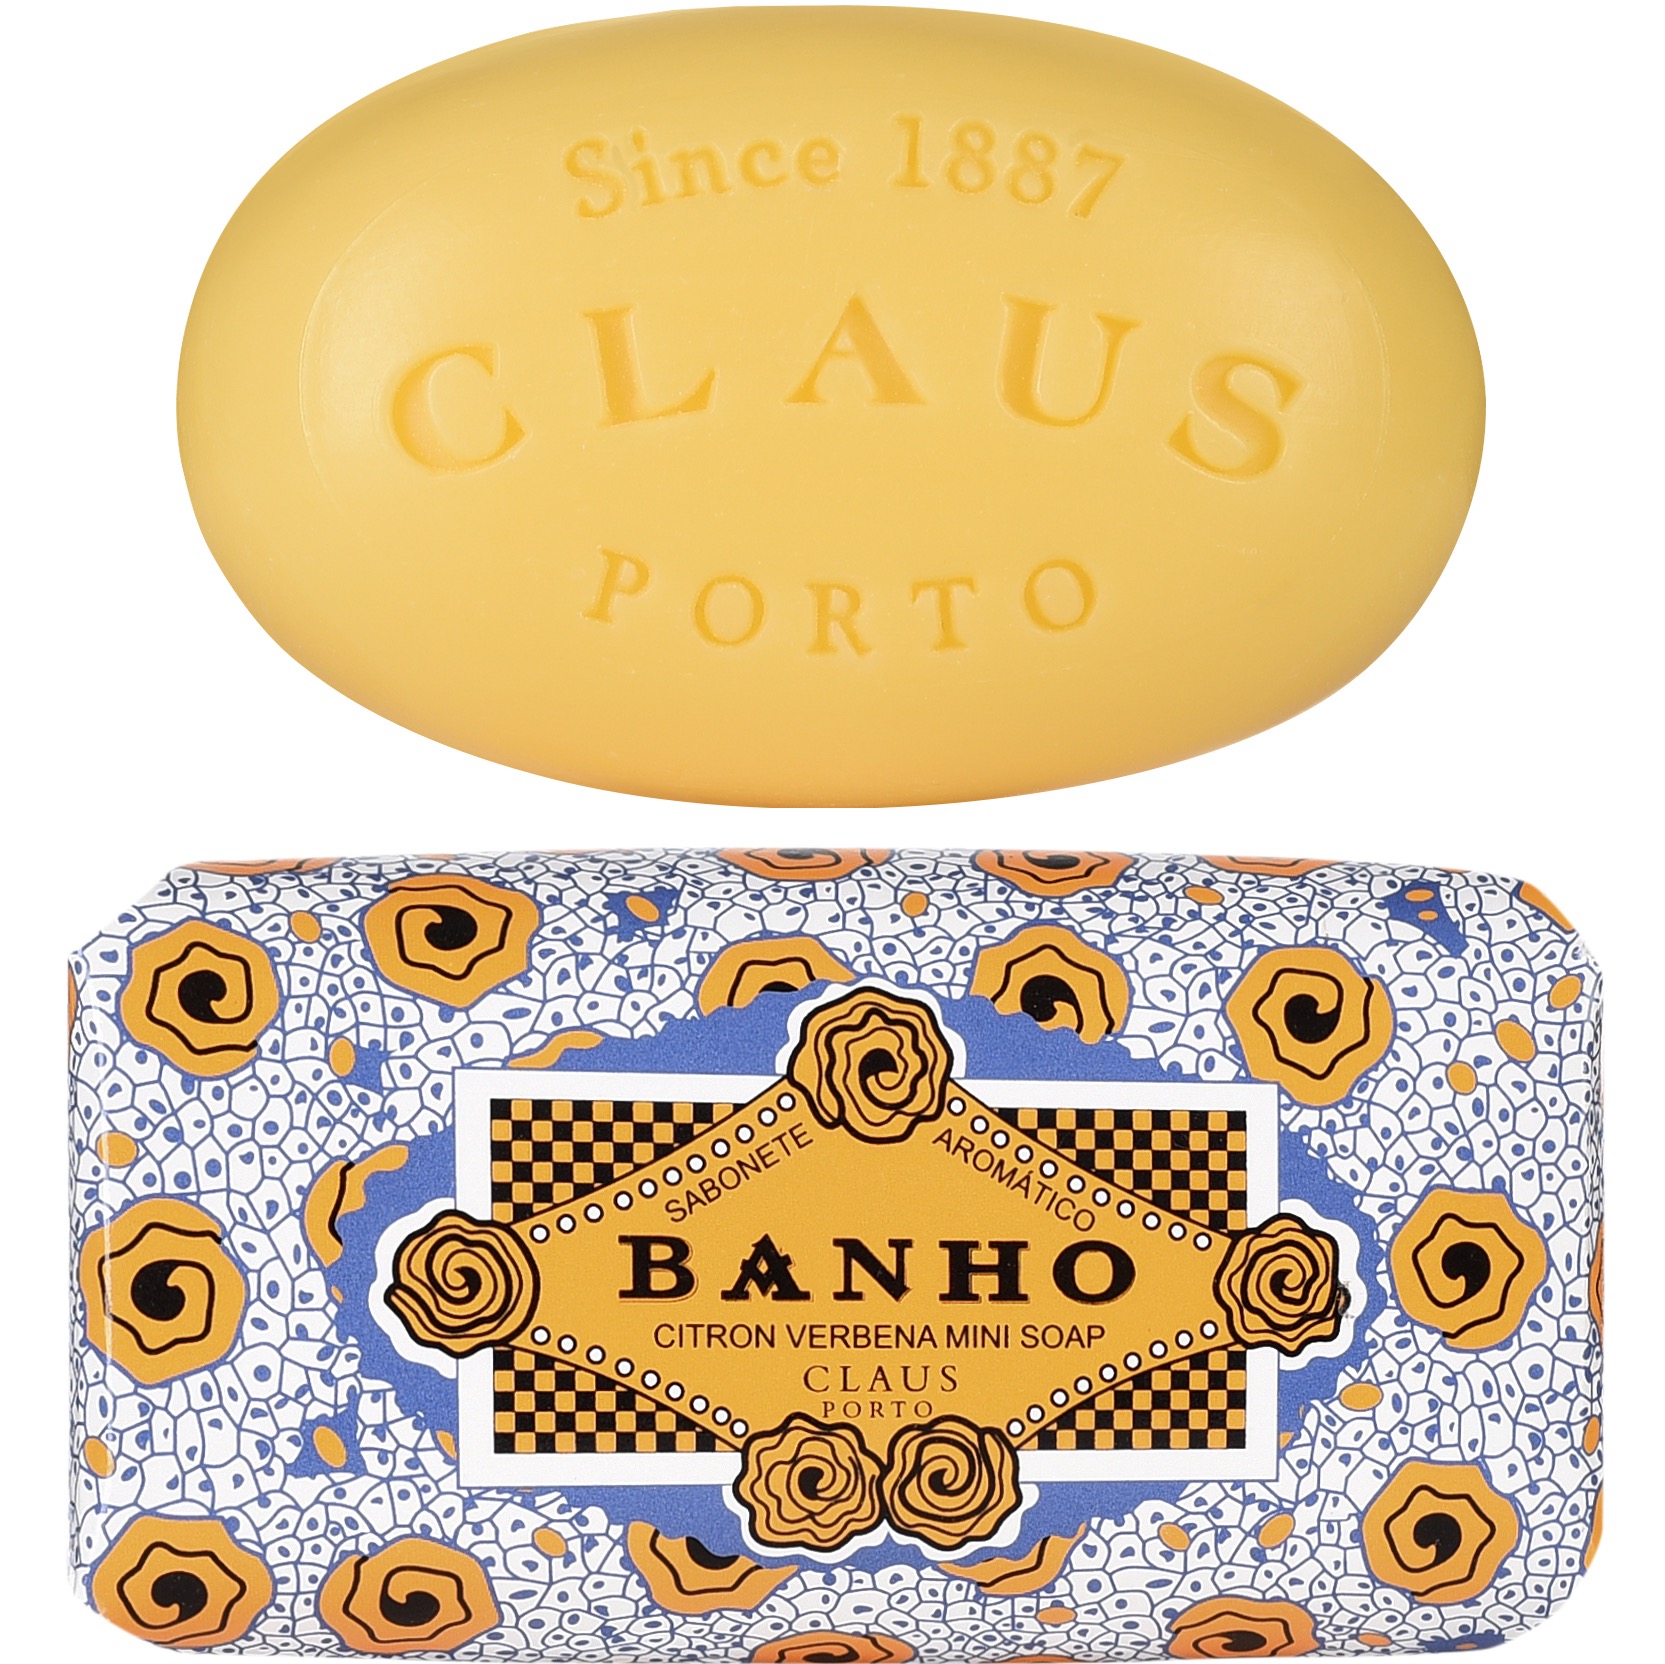 Claus Porto Mini Soap Bahno Citron Verbena 50g - 1.3 - CP-MS101